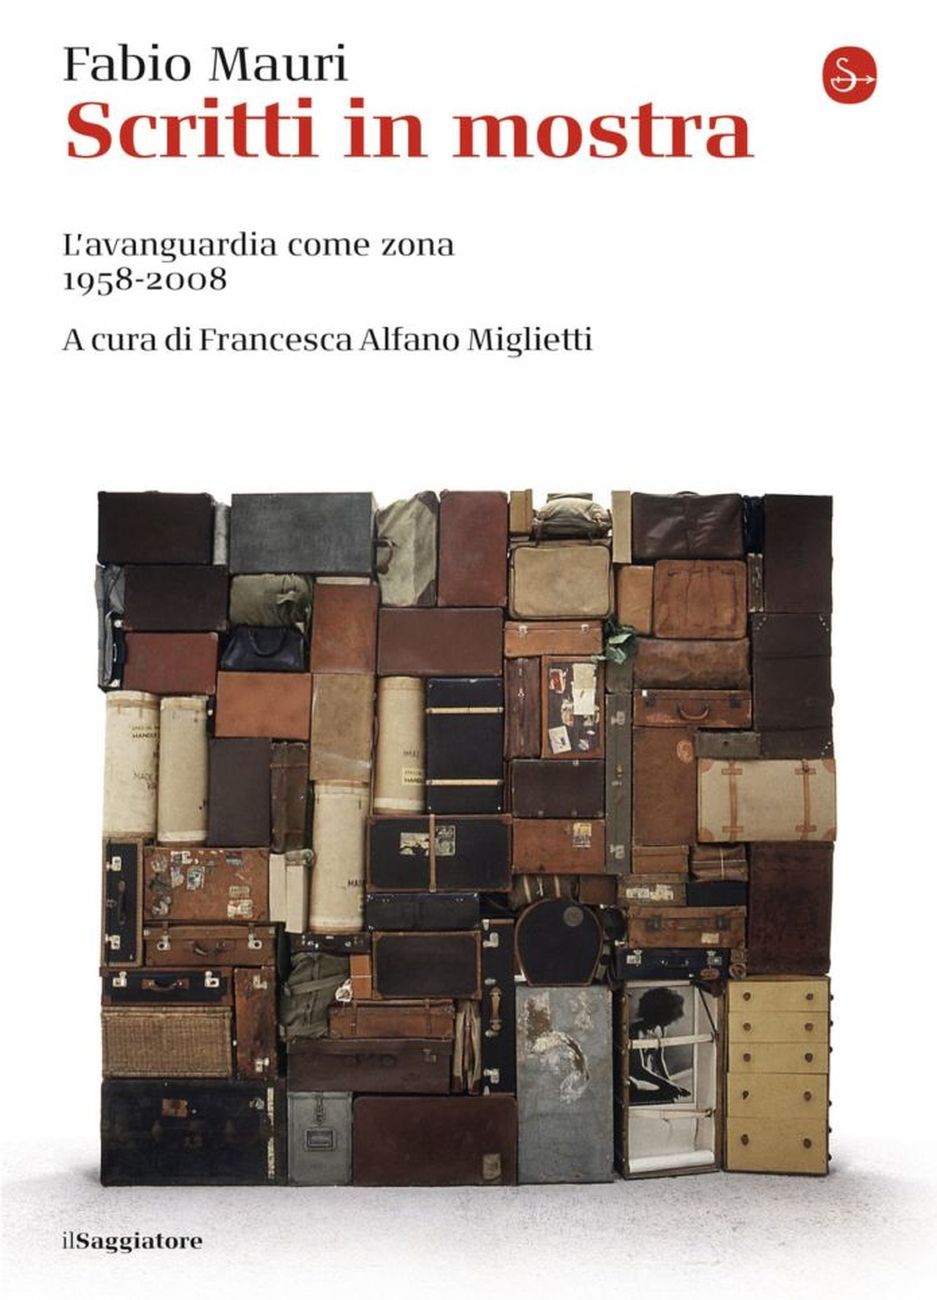 Fabio Mauri – Scritti in mostra (il Saggiatore, Milano 2019, II edizione)